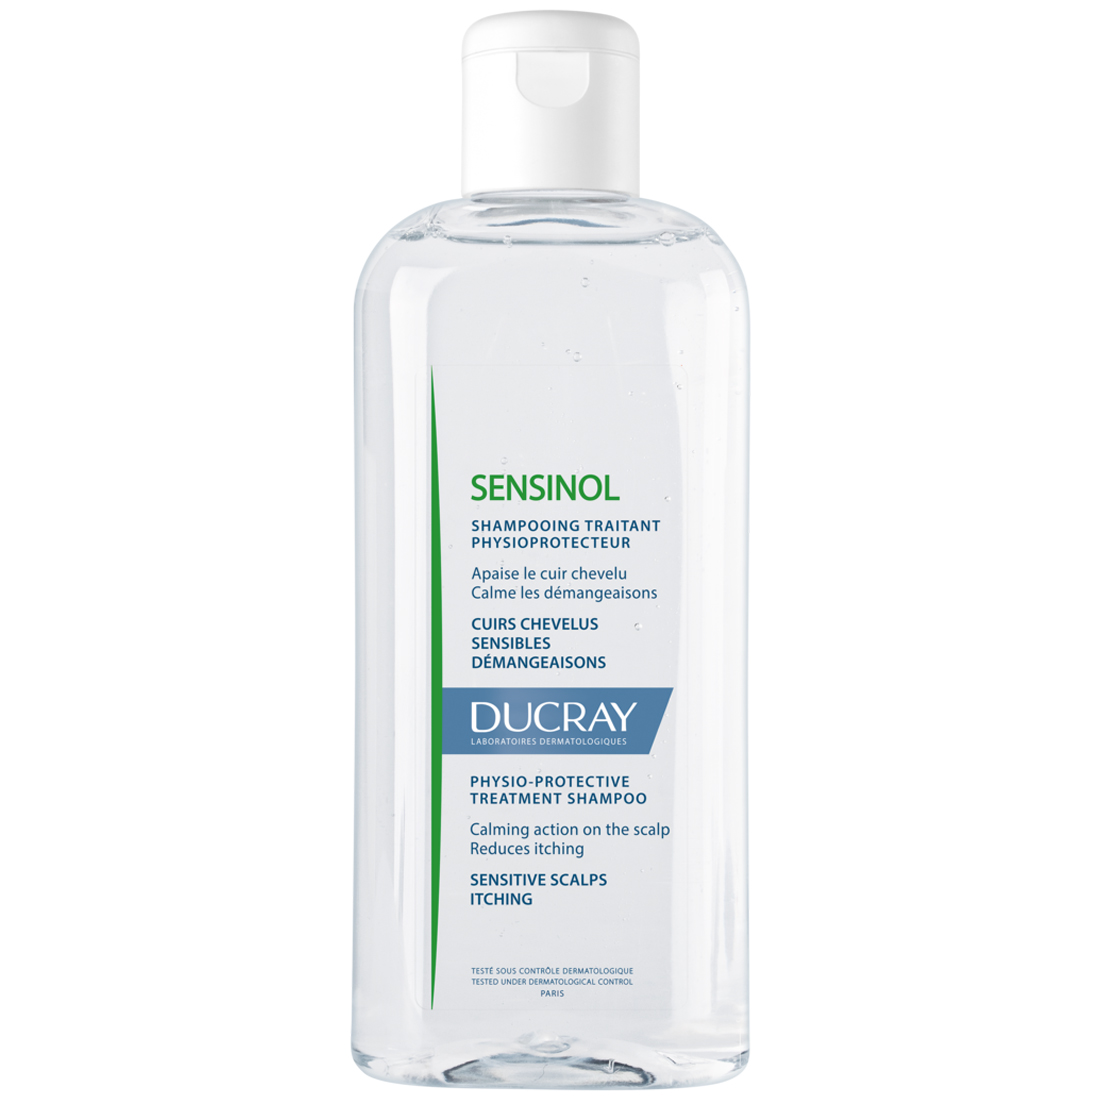 Ducray Физиологический защитный шампунь для чувствительной кожи, 200 мл (Ducray, Sensinol)